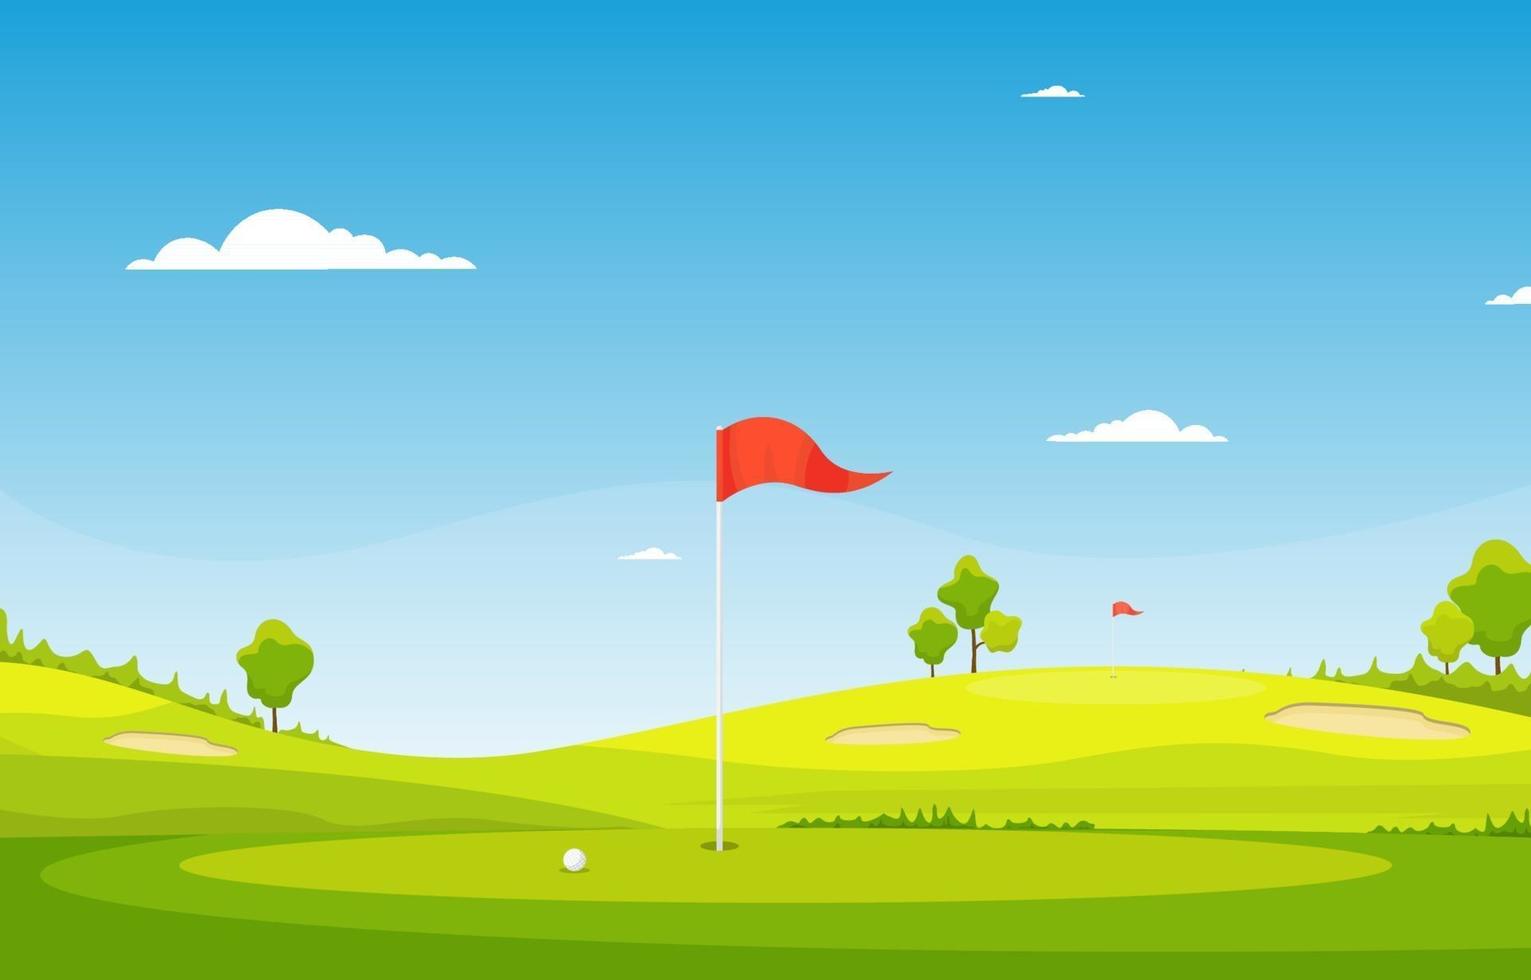 terrain de golf avec drapeau rouge, arbres et pièges à sable vecteur